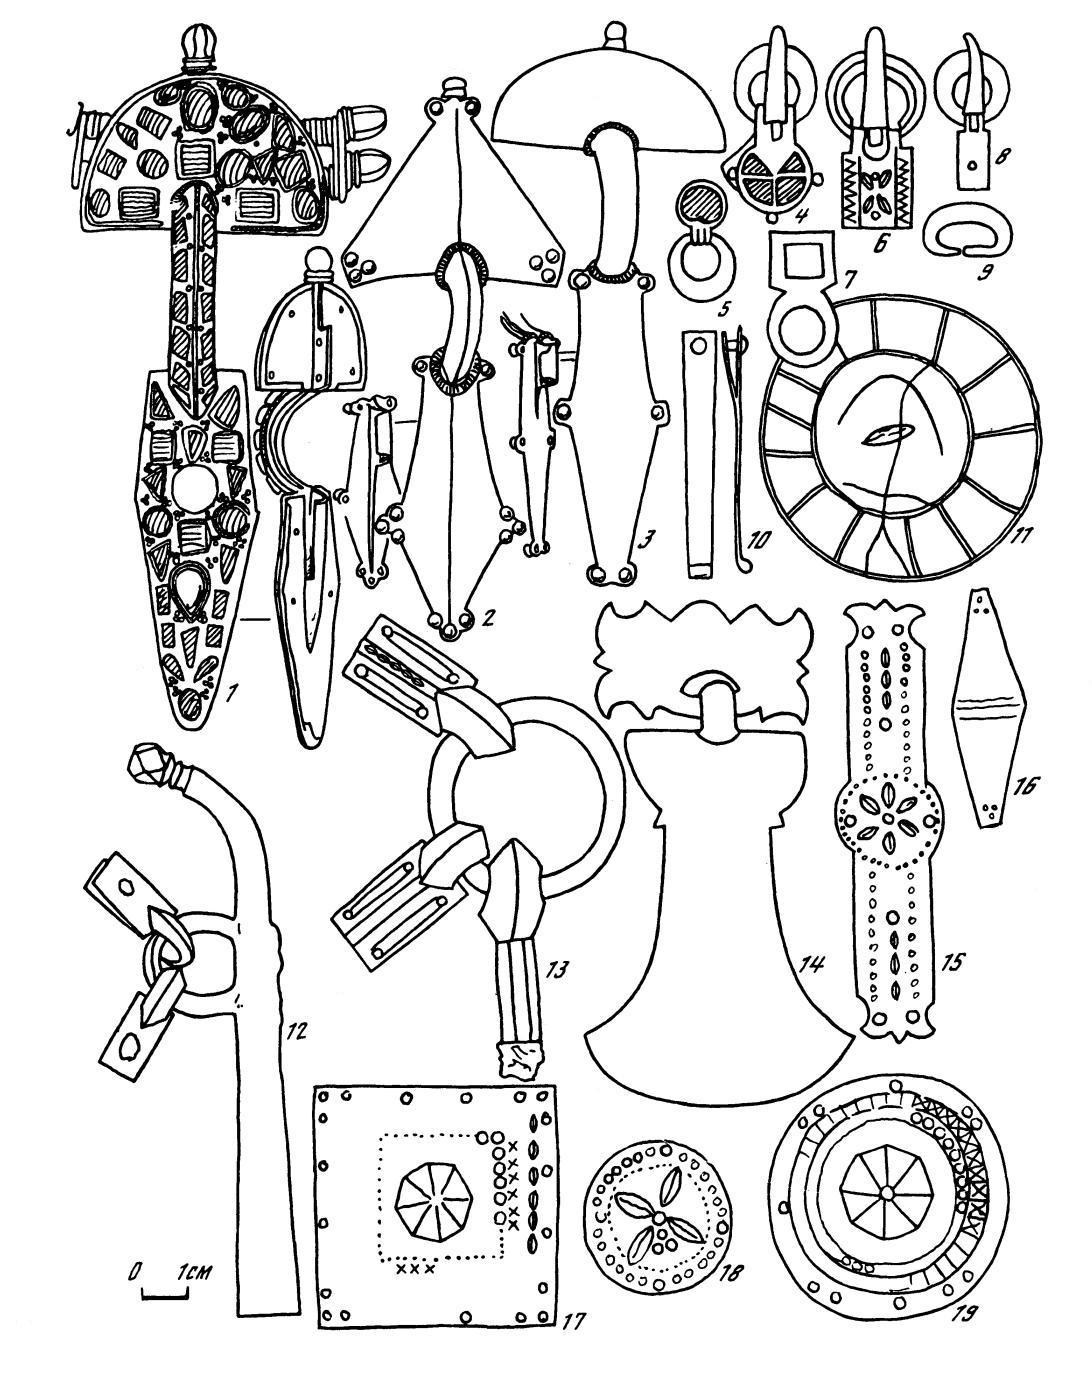 Вещи в стиле Унтерзибенбрунн по А. Амброзу - пряжки, украшения и фибулы постгуннской эпохи